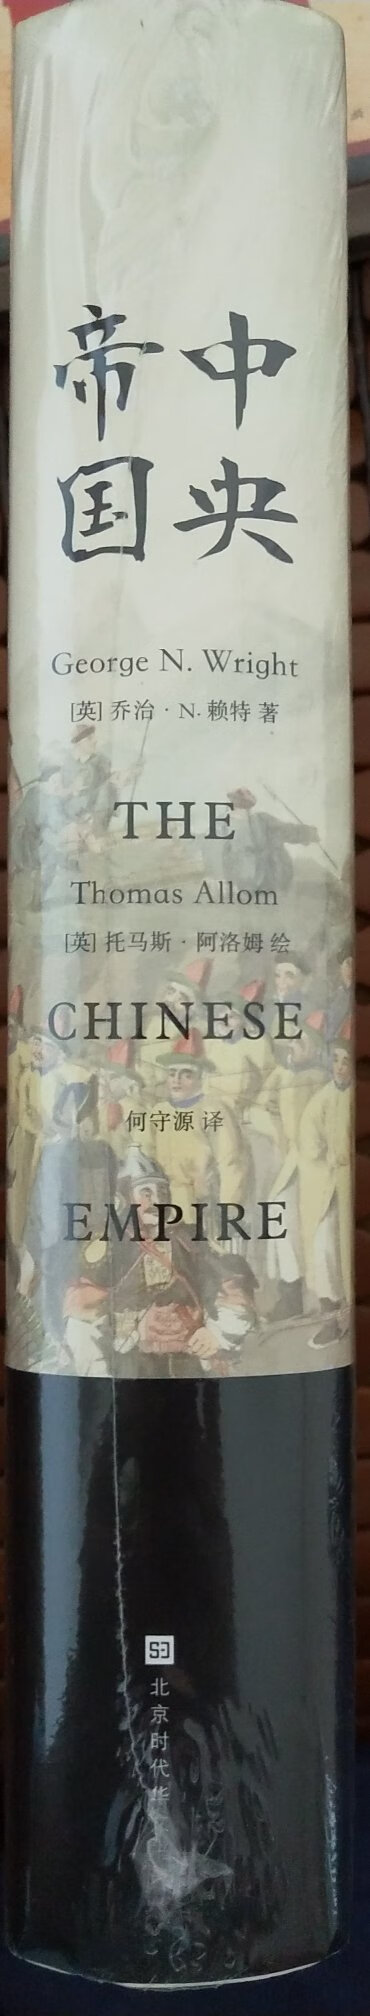 中国在1840年以前多是一个“中央大帝国”的姿态，因为中国比欧洲早了近一千年时间完成了从奴隶社会到封建时代的转型，创造了许多的奇迹和世界第一，常常能感受到中华文化对周边地区乃至世界的影响。正因为“东学西渐”的影响，所以直到在19世纪的欧美人眼中，名为“清”的“中央帝国”是世界第一大国，同时也是一个神秘而遥远的国度。有识之士渴望了解泱泱中华的古老文明、礼仪风范、文学艺术与科学技术，揭开这个东方大国的神秘面纱，而这本书正是以世界人之眼看中国的历史巨著，是西方世界对中国的“观看角度”与科学记录。在书中那一幅幅细腻生动的画作勾勒出晚清社会朝野的市井浮世绘，像一幅辽阔的中华帝国全景图徐徐展现在眼前。英国作家乔治·N.赖特的撰文解说，可以说是从一个独特的视角真实地反映了中国的历史、社会、民俗、文化以及东西方的文化交流。书很厚，内容详实，内含丰富的历史细节，需要耐性好好读一读。商家服务态度很好，发货及时物流很快，快递小哥细心周到人很好！